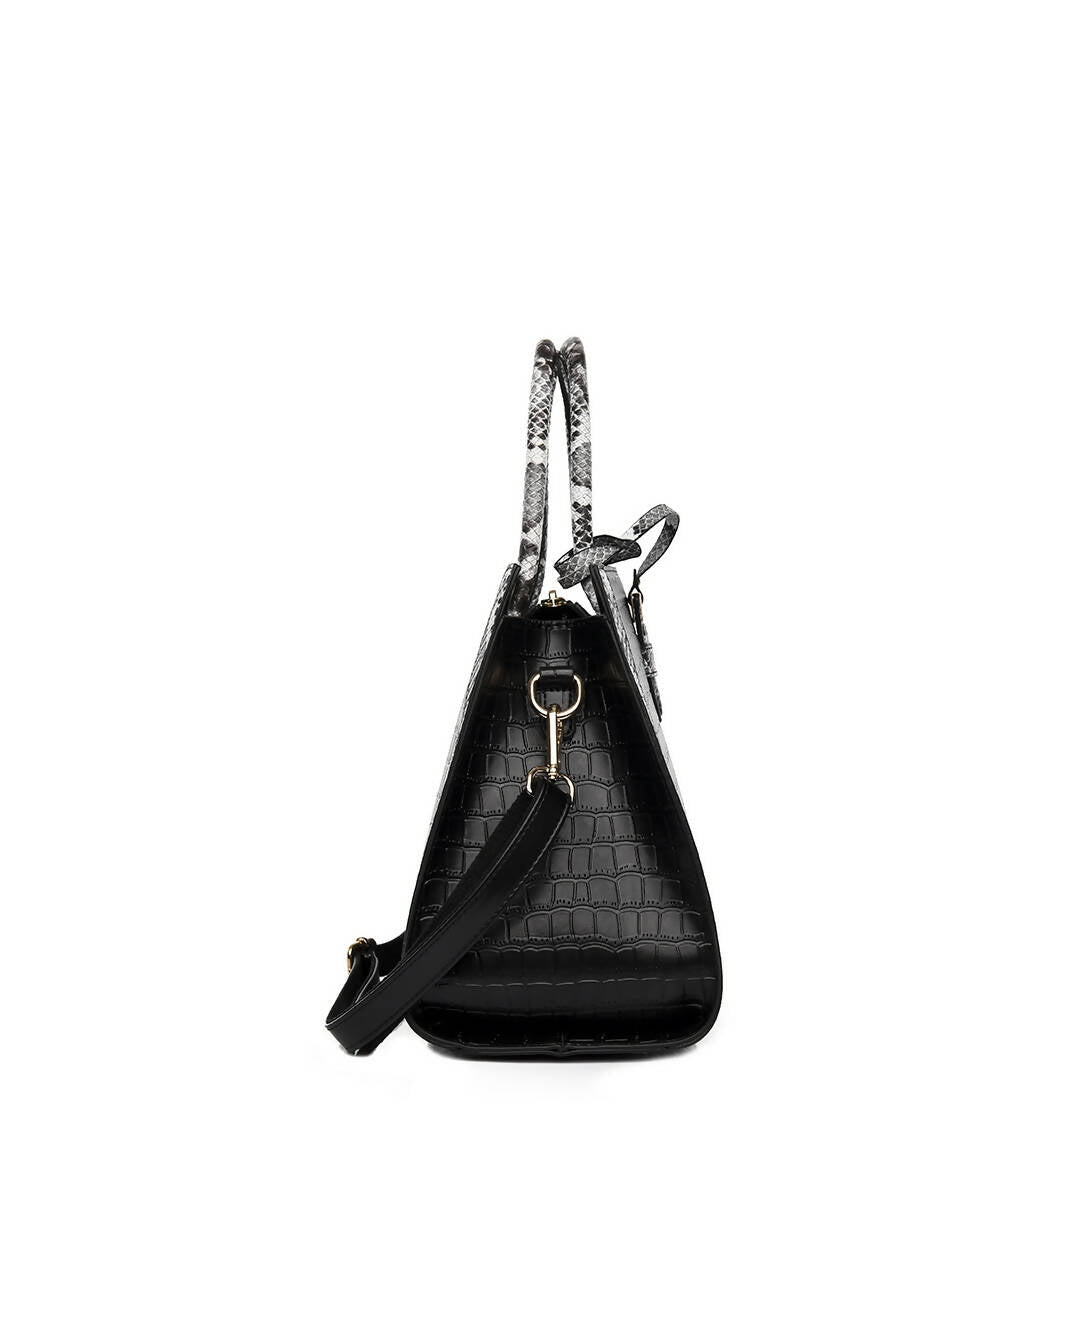 Slaks World Fashion Large Office Handbag - Black - Shopzetu